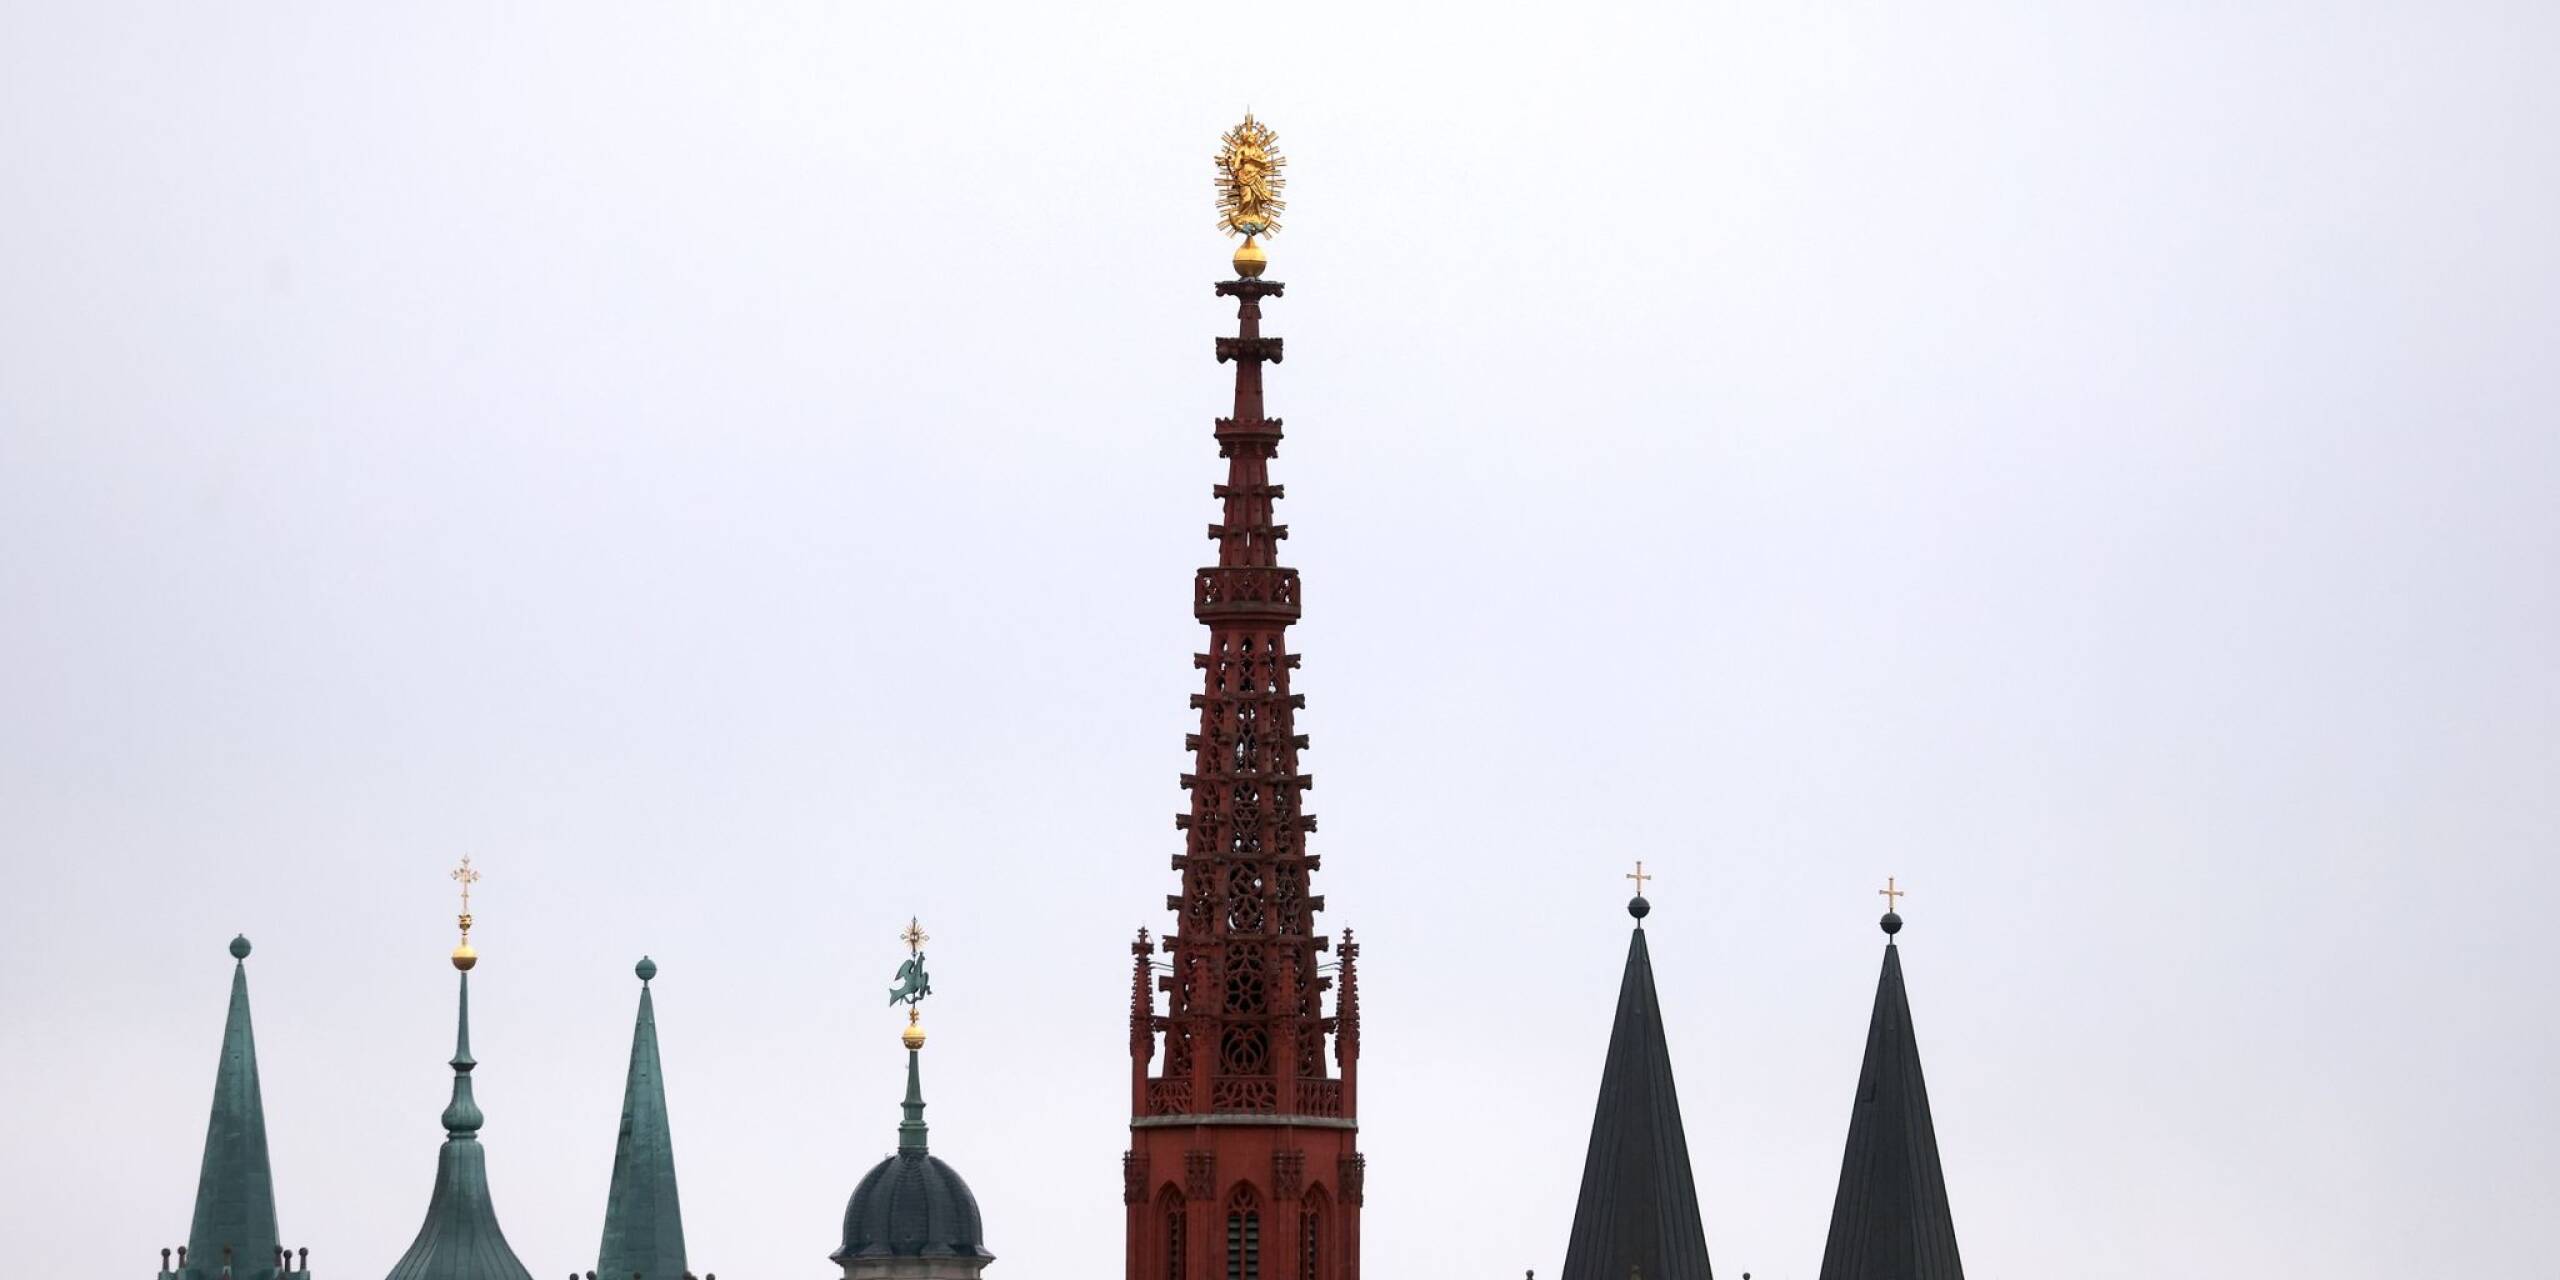 Karfreitag in Bayern: Die Türme des Doms, der Neumünsterkirche und der Marienkapelle zeichnen sich in Würzburg vor dem bewölktem Himmel ab.